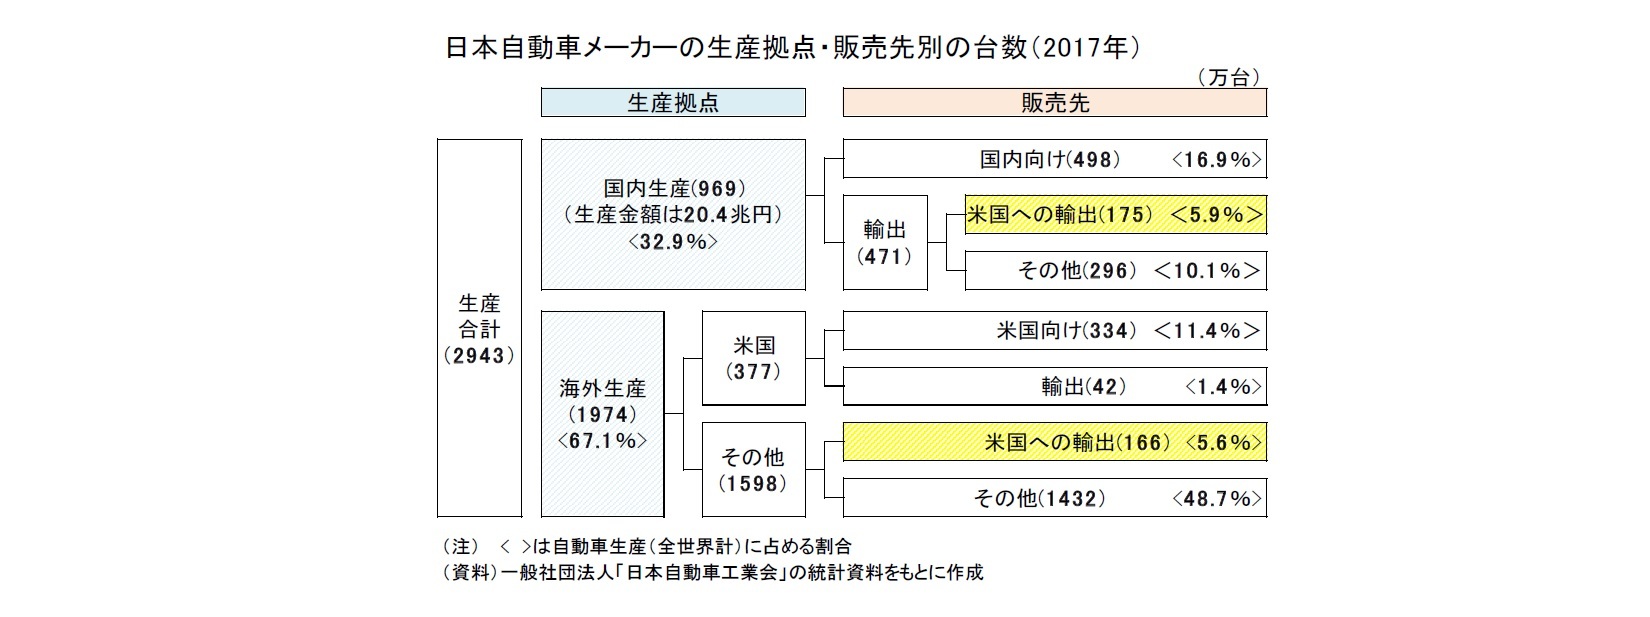 日本自動車メーカーの生産拠点・販売先別の台数（2017年）